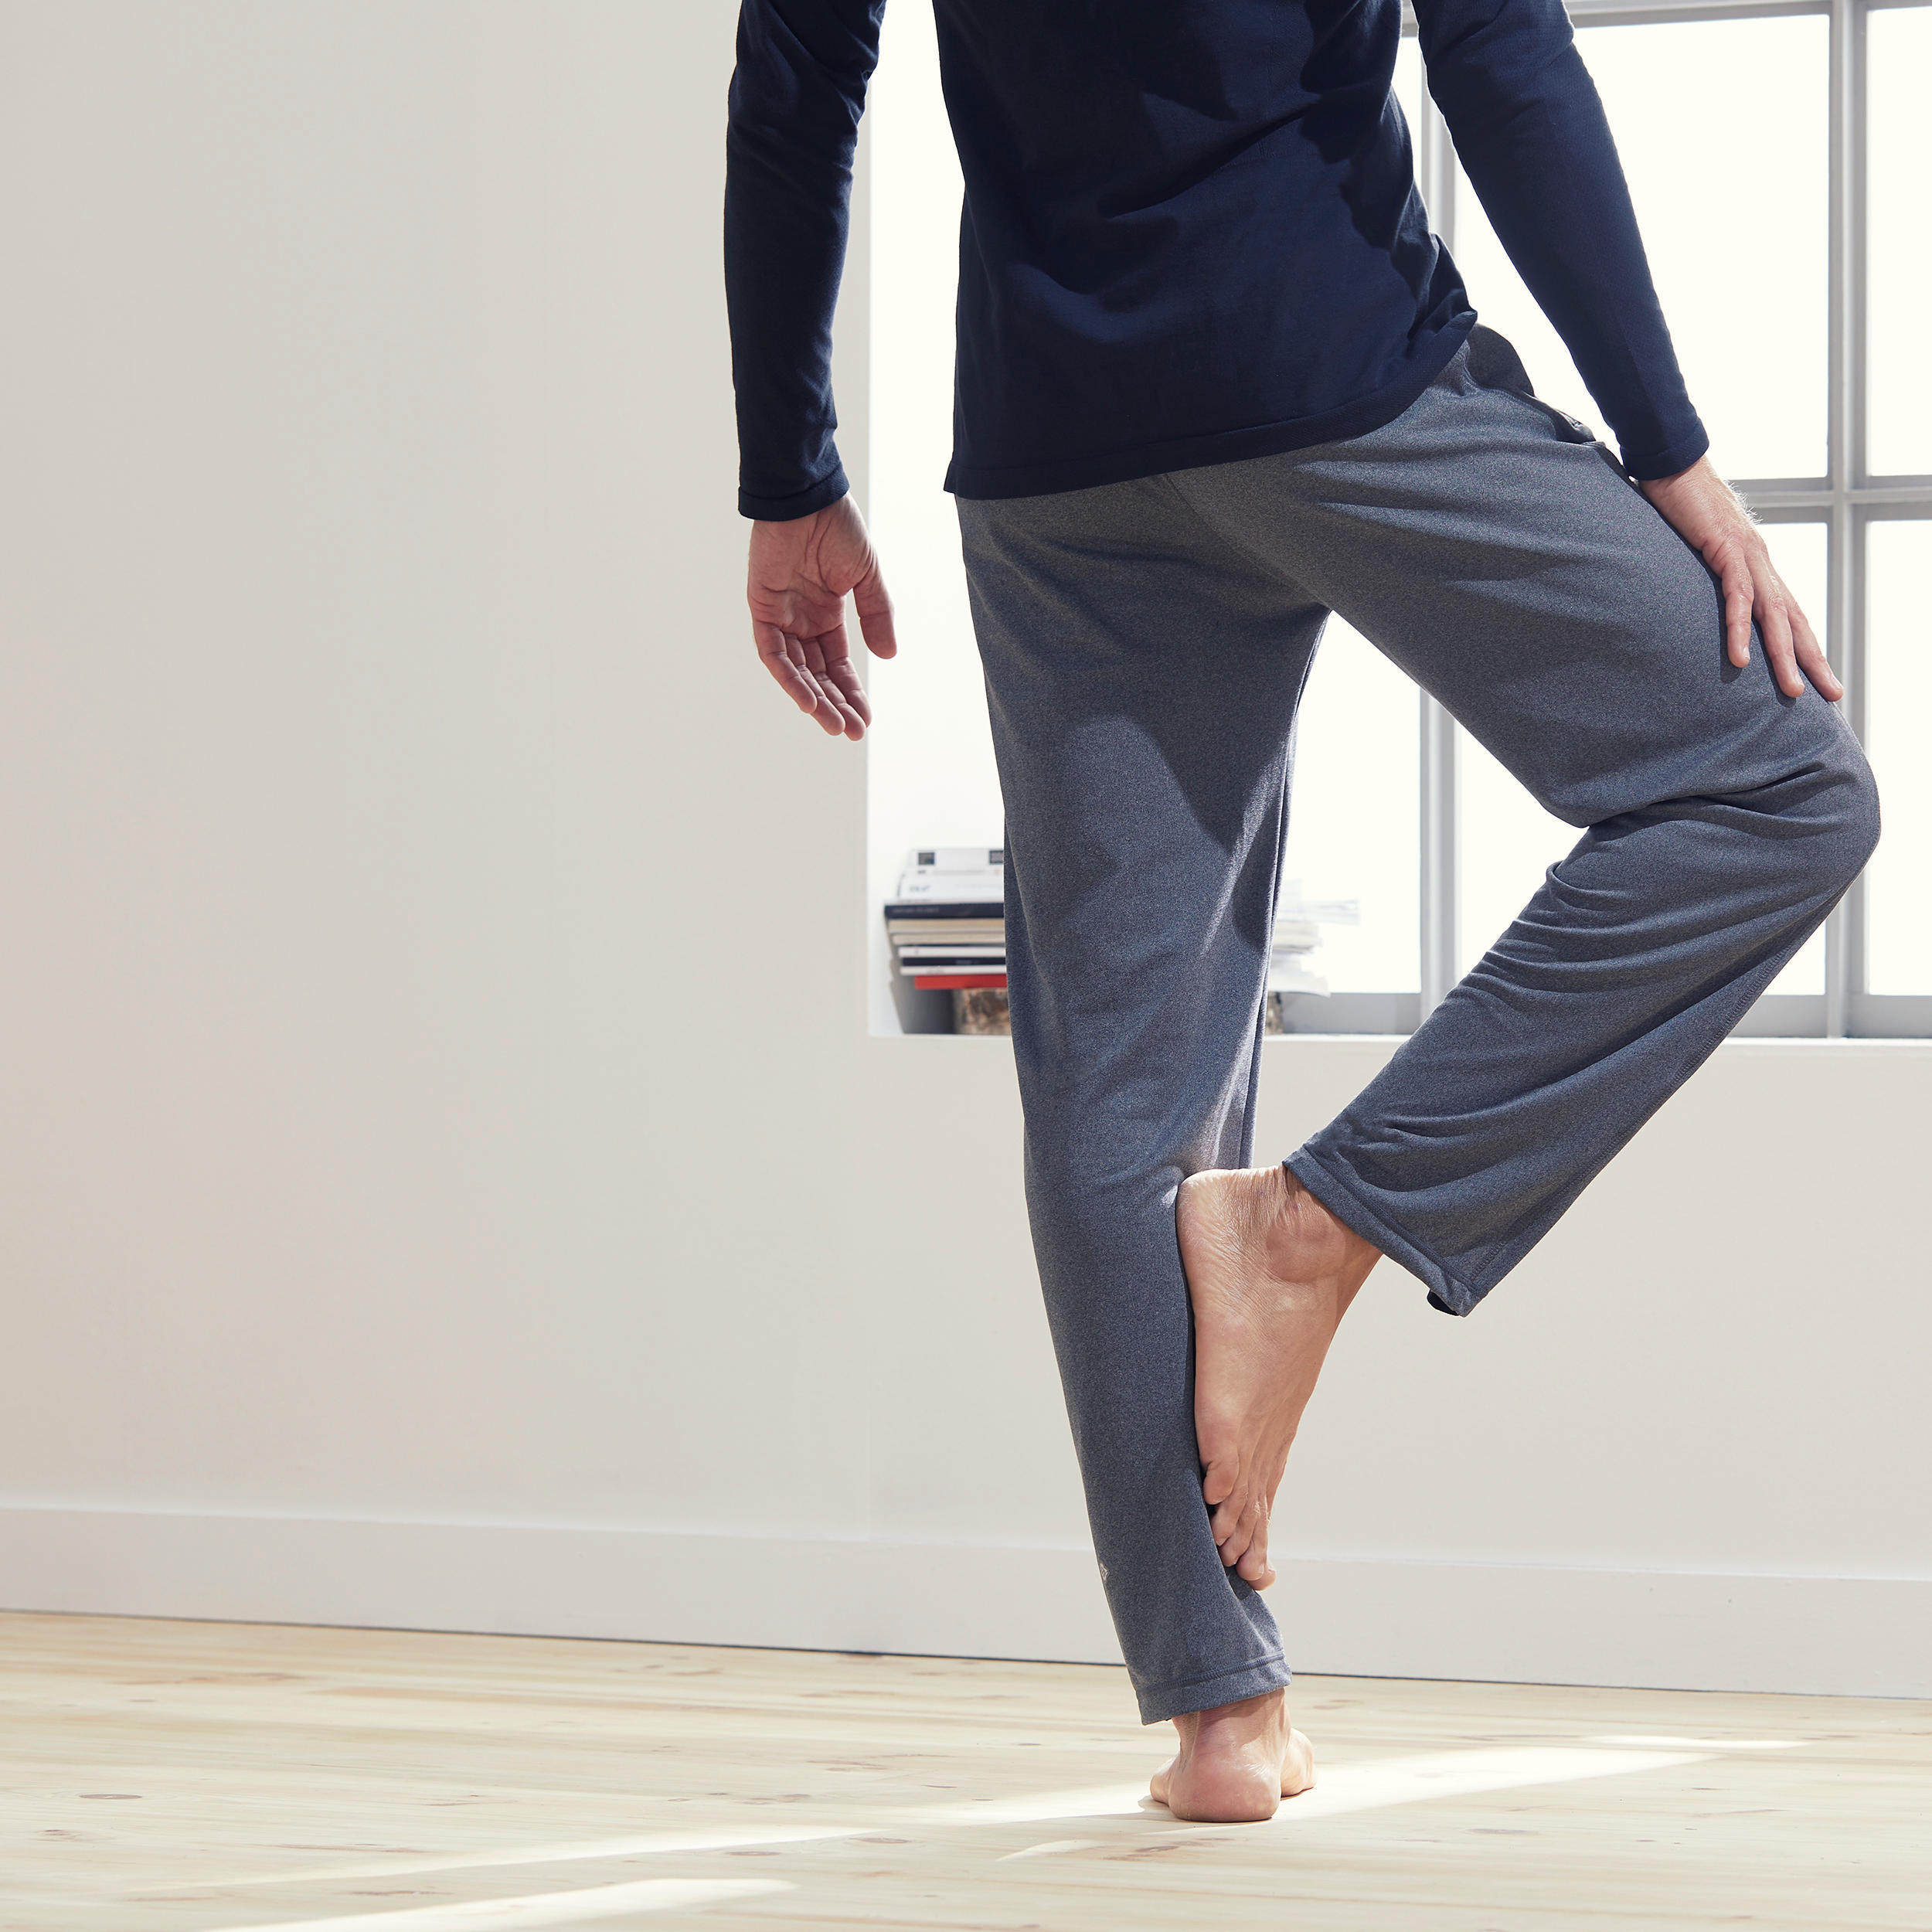 Men's Gentle Yoga Bottoms Grey 7/7